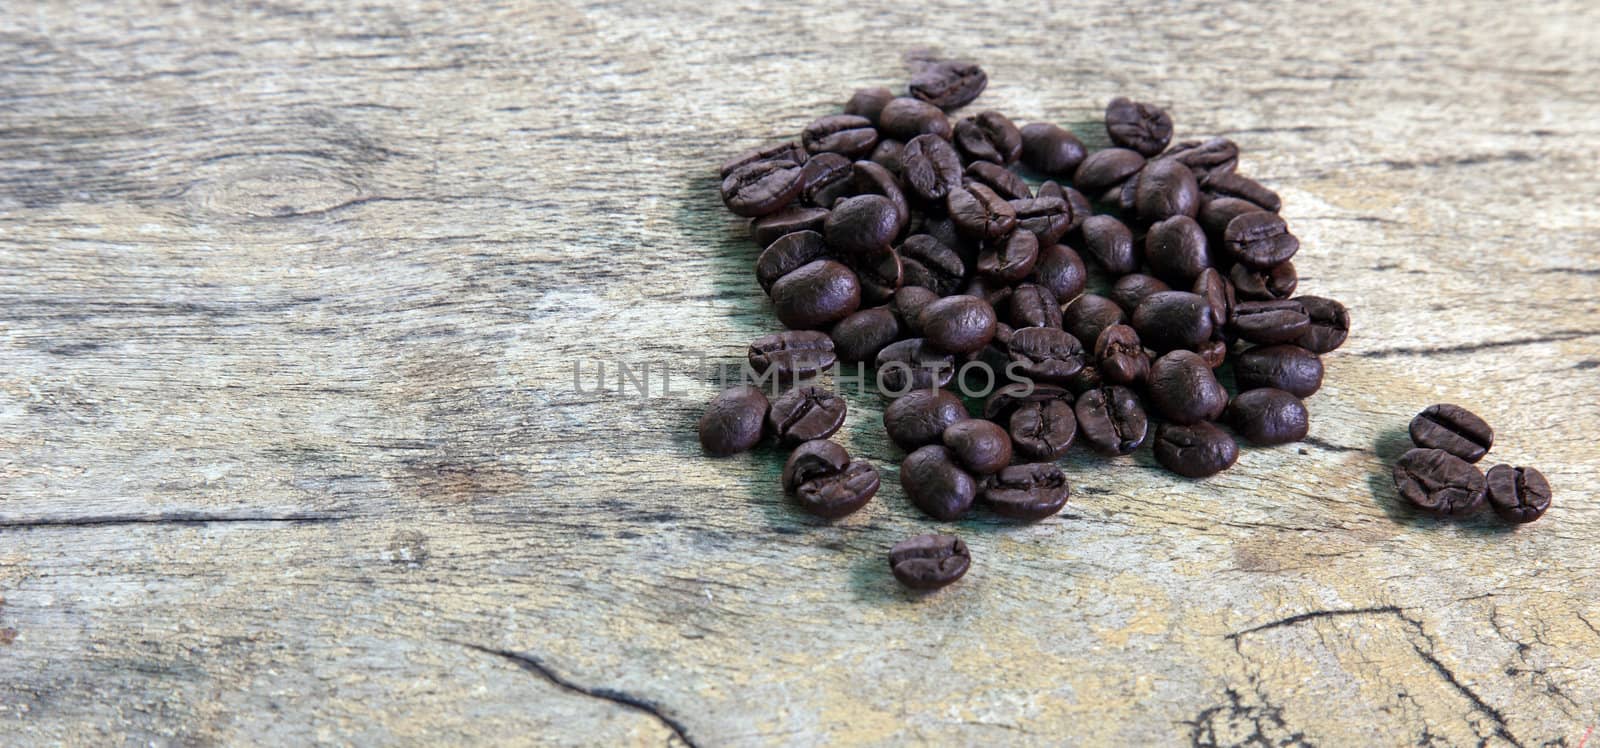 Coffee beans in dark roast level on rustic wooden board.